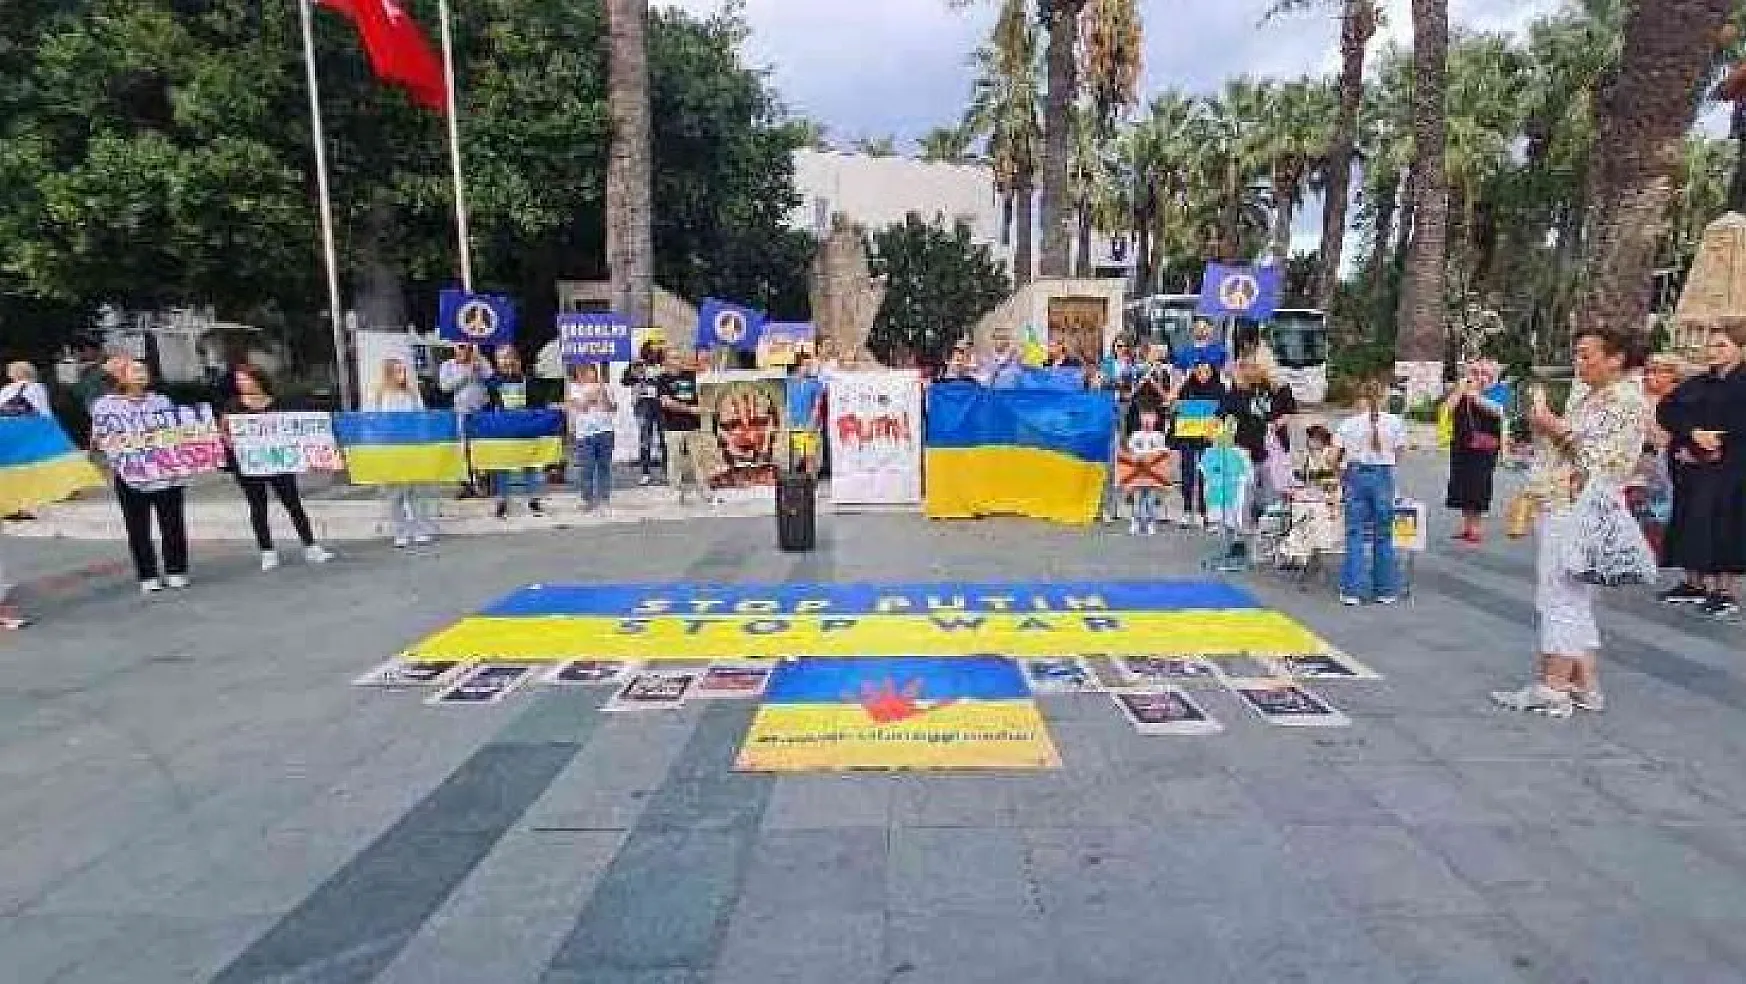 UKRAYNALILAR, RUSYA'YI PROTESTO ETTİ